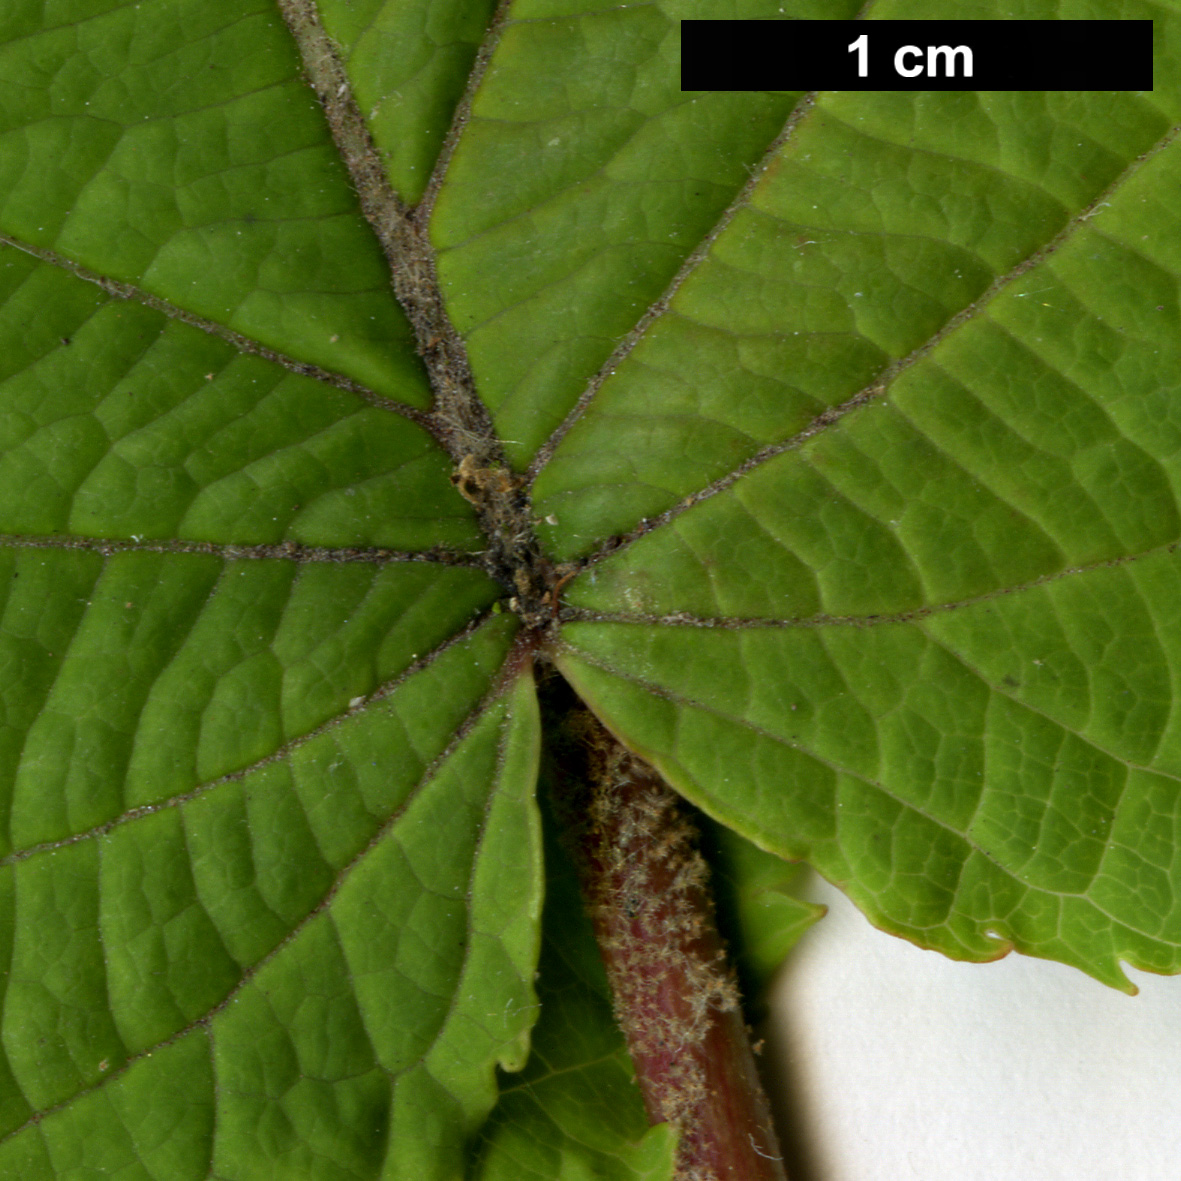 High resolution image: Family: Adoxaceae - Genus: Viburnum - Taxon: furcatum